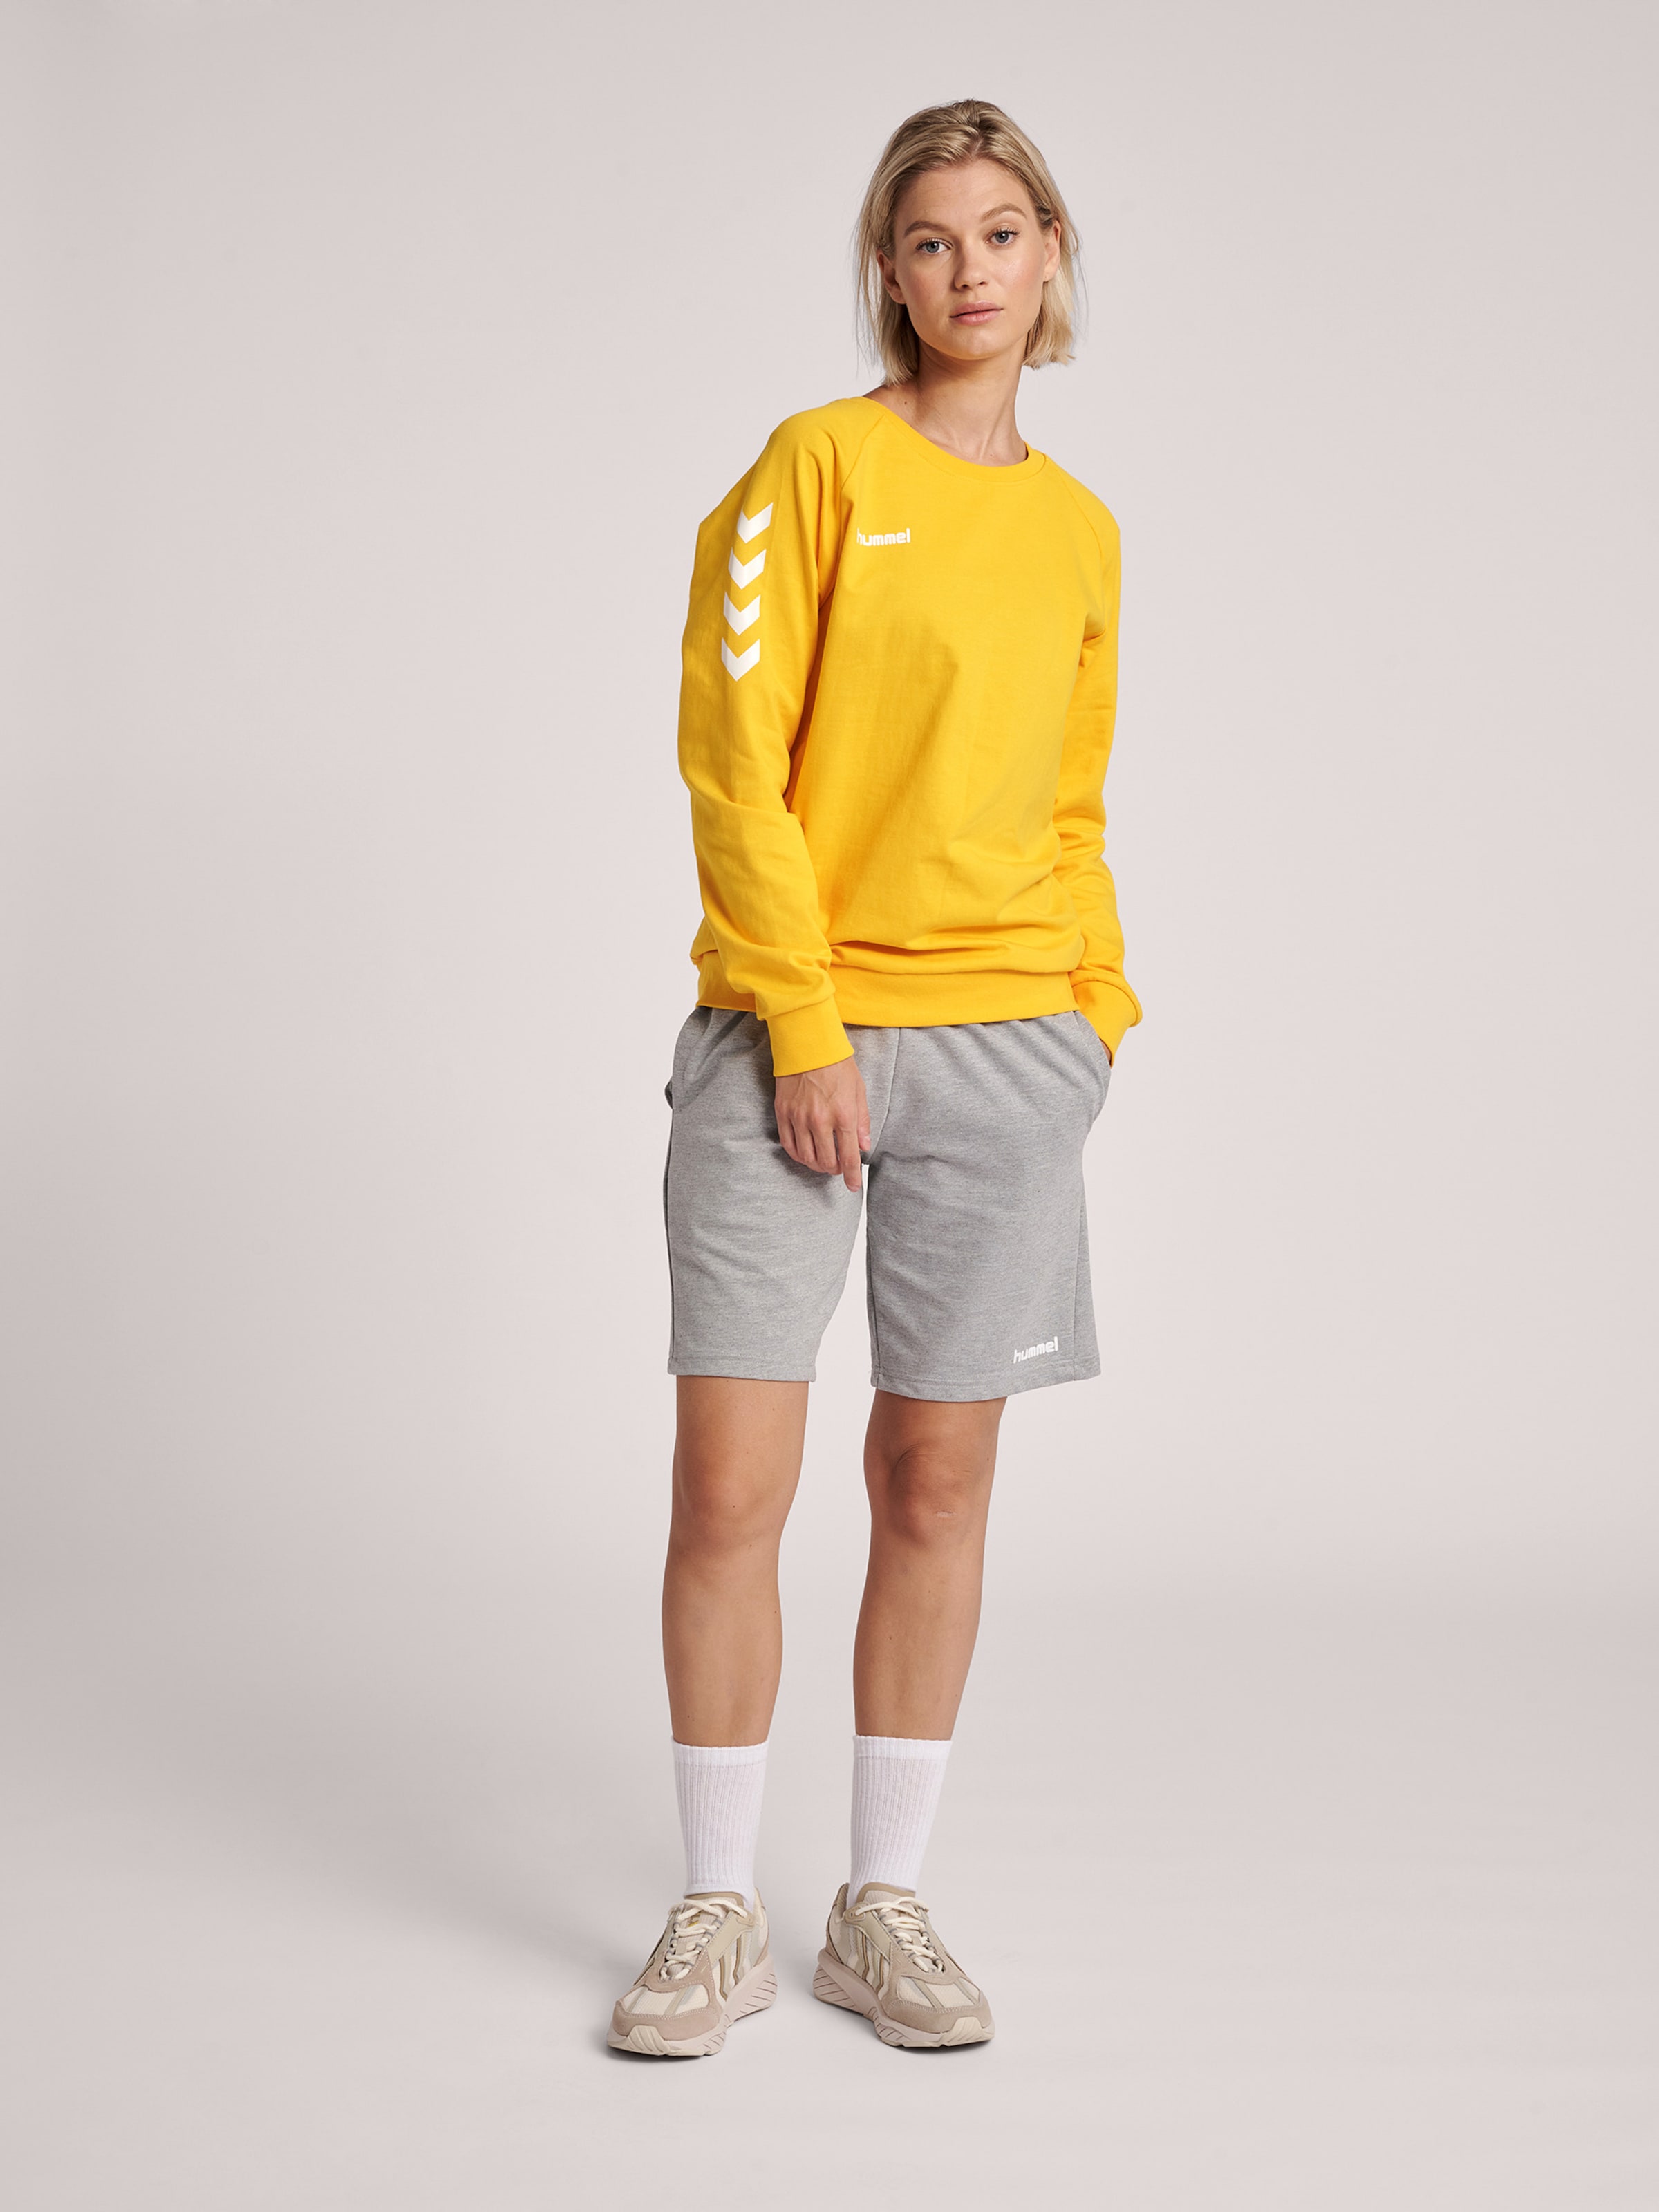 Frauen Sportarten Hummel Sweatshirt in Gelb, Weiß - NF67502